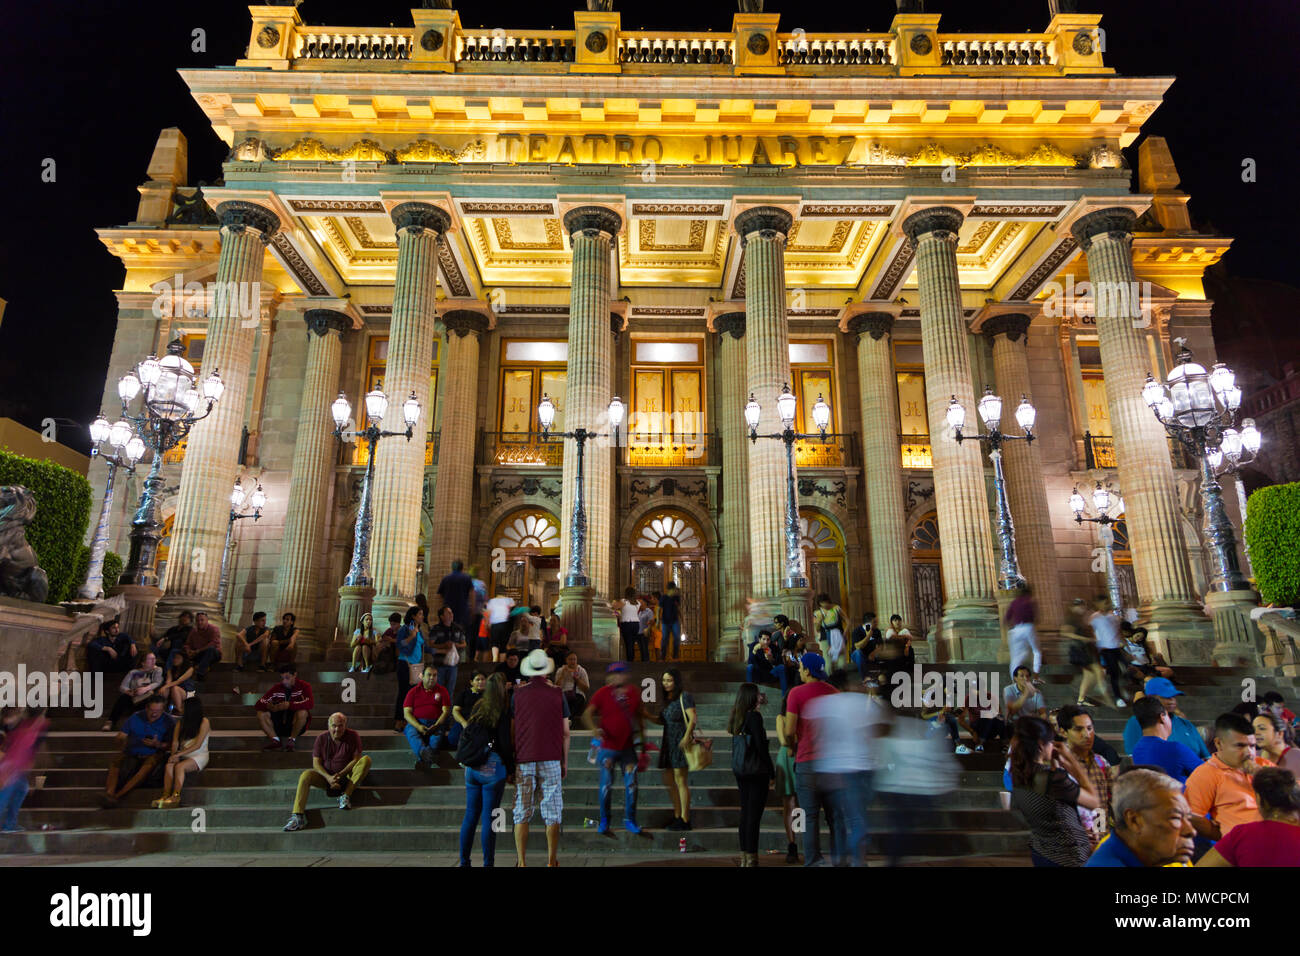 Tourist sur les marches de la nuit au Théâtre Juarez - Guanajuato, Mexique Banque D'Images